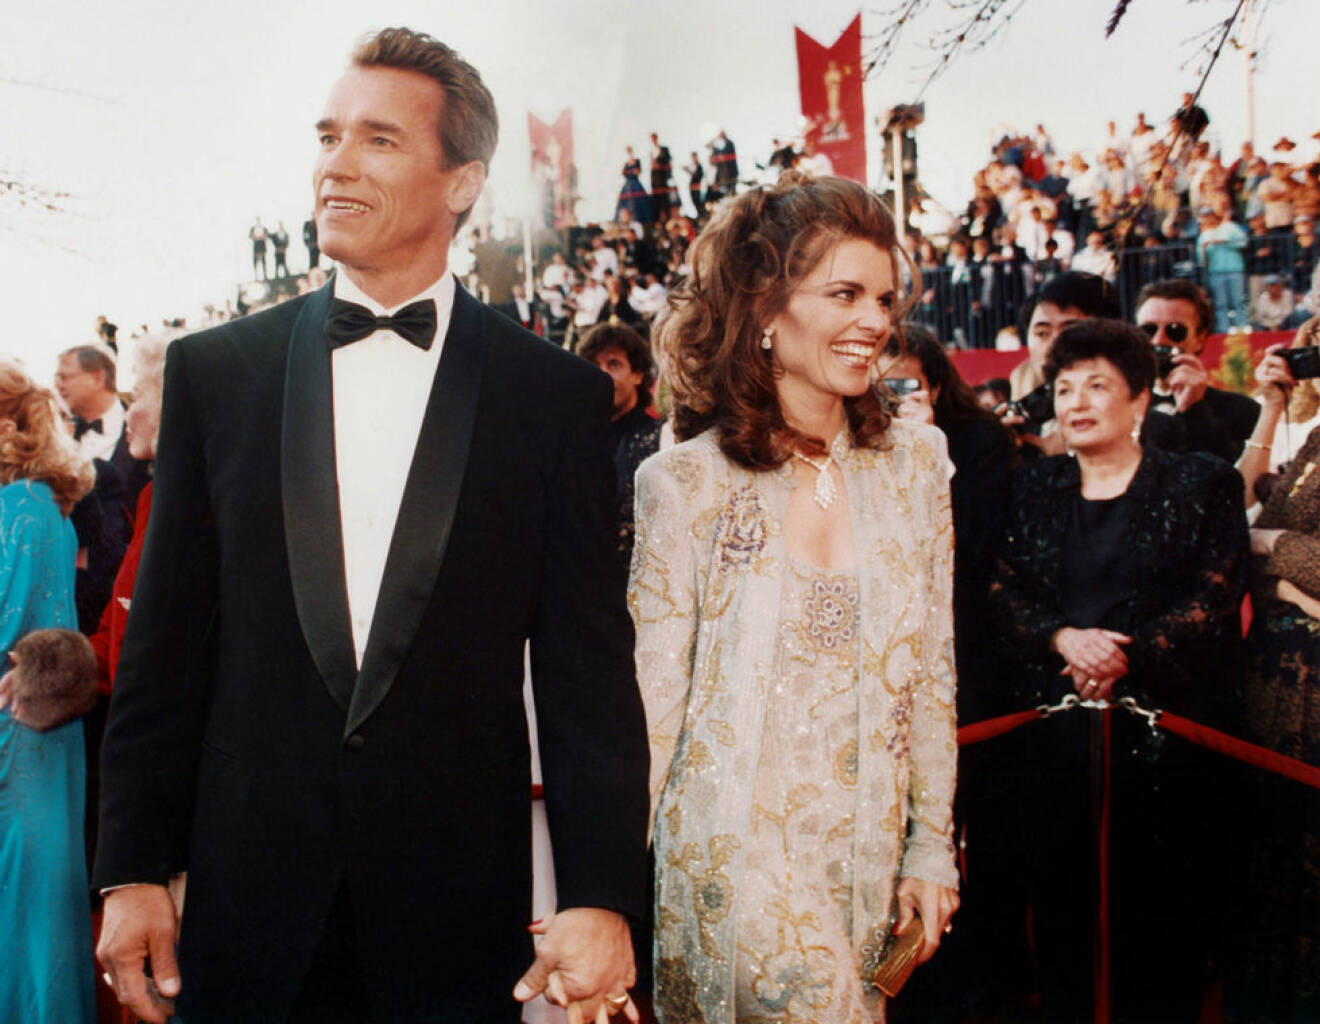 Arnold Schwarzenegger var aktiv republikan medan han var gift med exfrun Maria Shriver som var demokrat och dessutom släkt med Kennedy-familjen